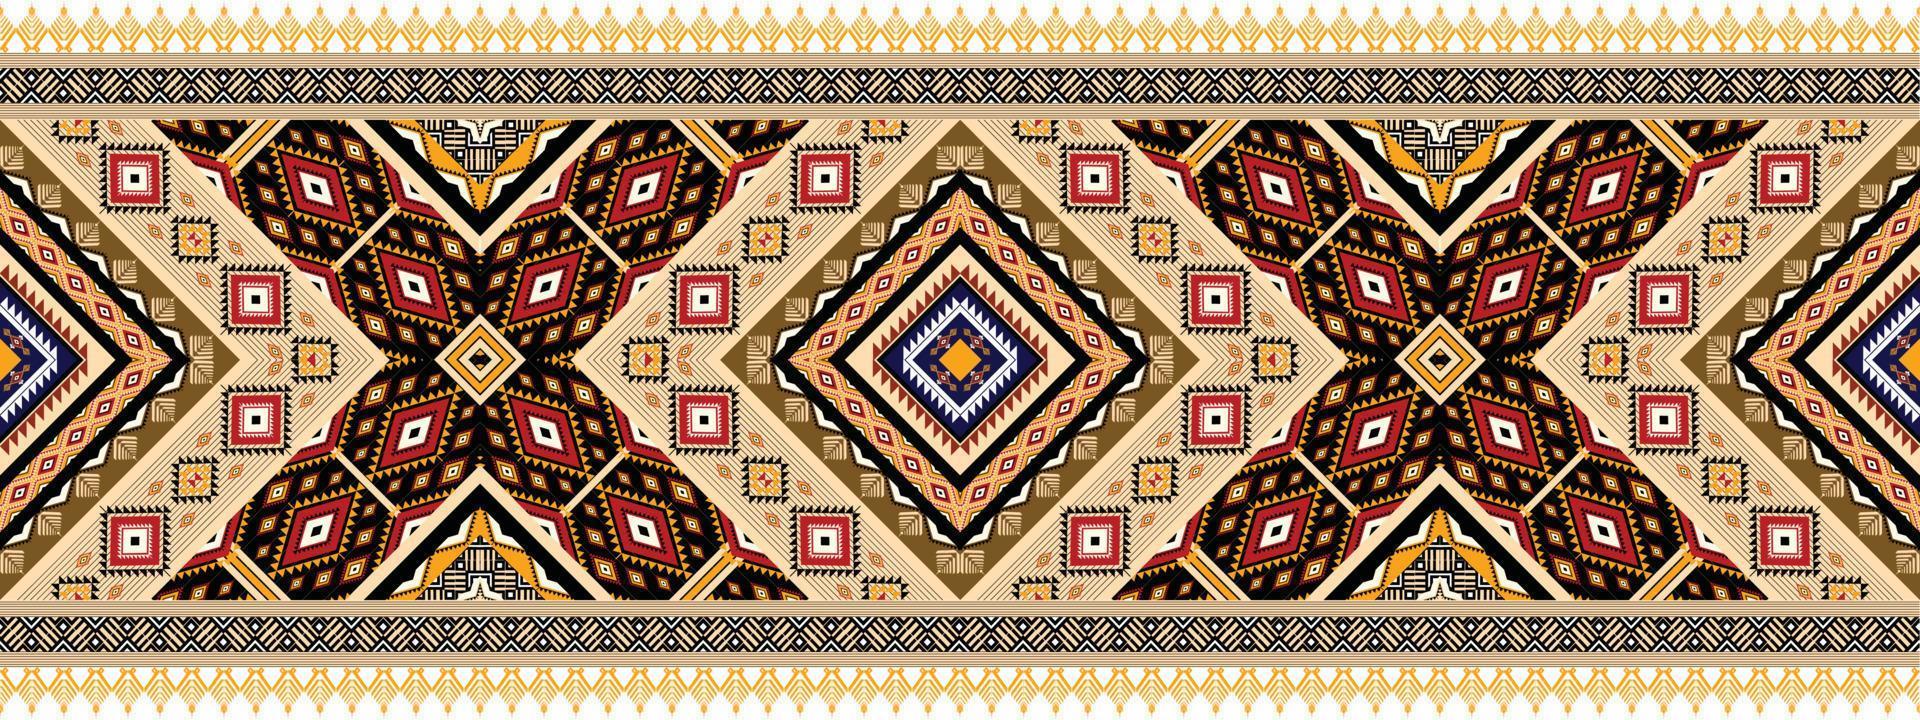 patrón geométrico étnico horizontal. estilo de patrón textil con motivos americanos y aztecas. diseño de patrones sin fisuras para tela, cortina, fondo, moqueta, papel pintado, ropa, envoltura, baldosas. vector americano